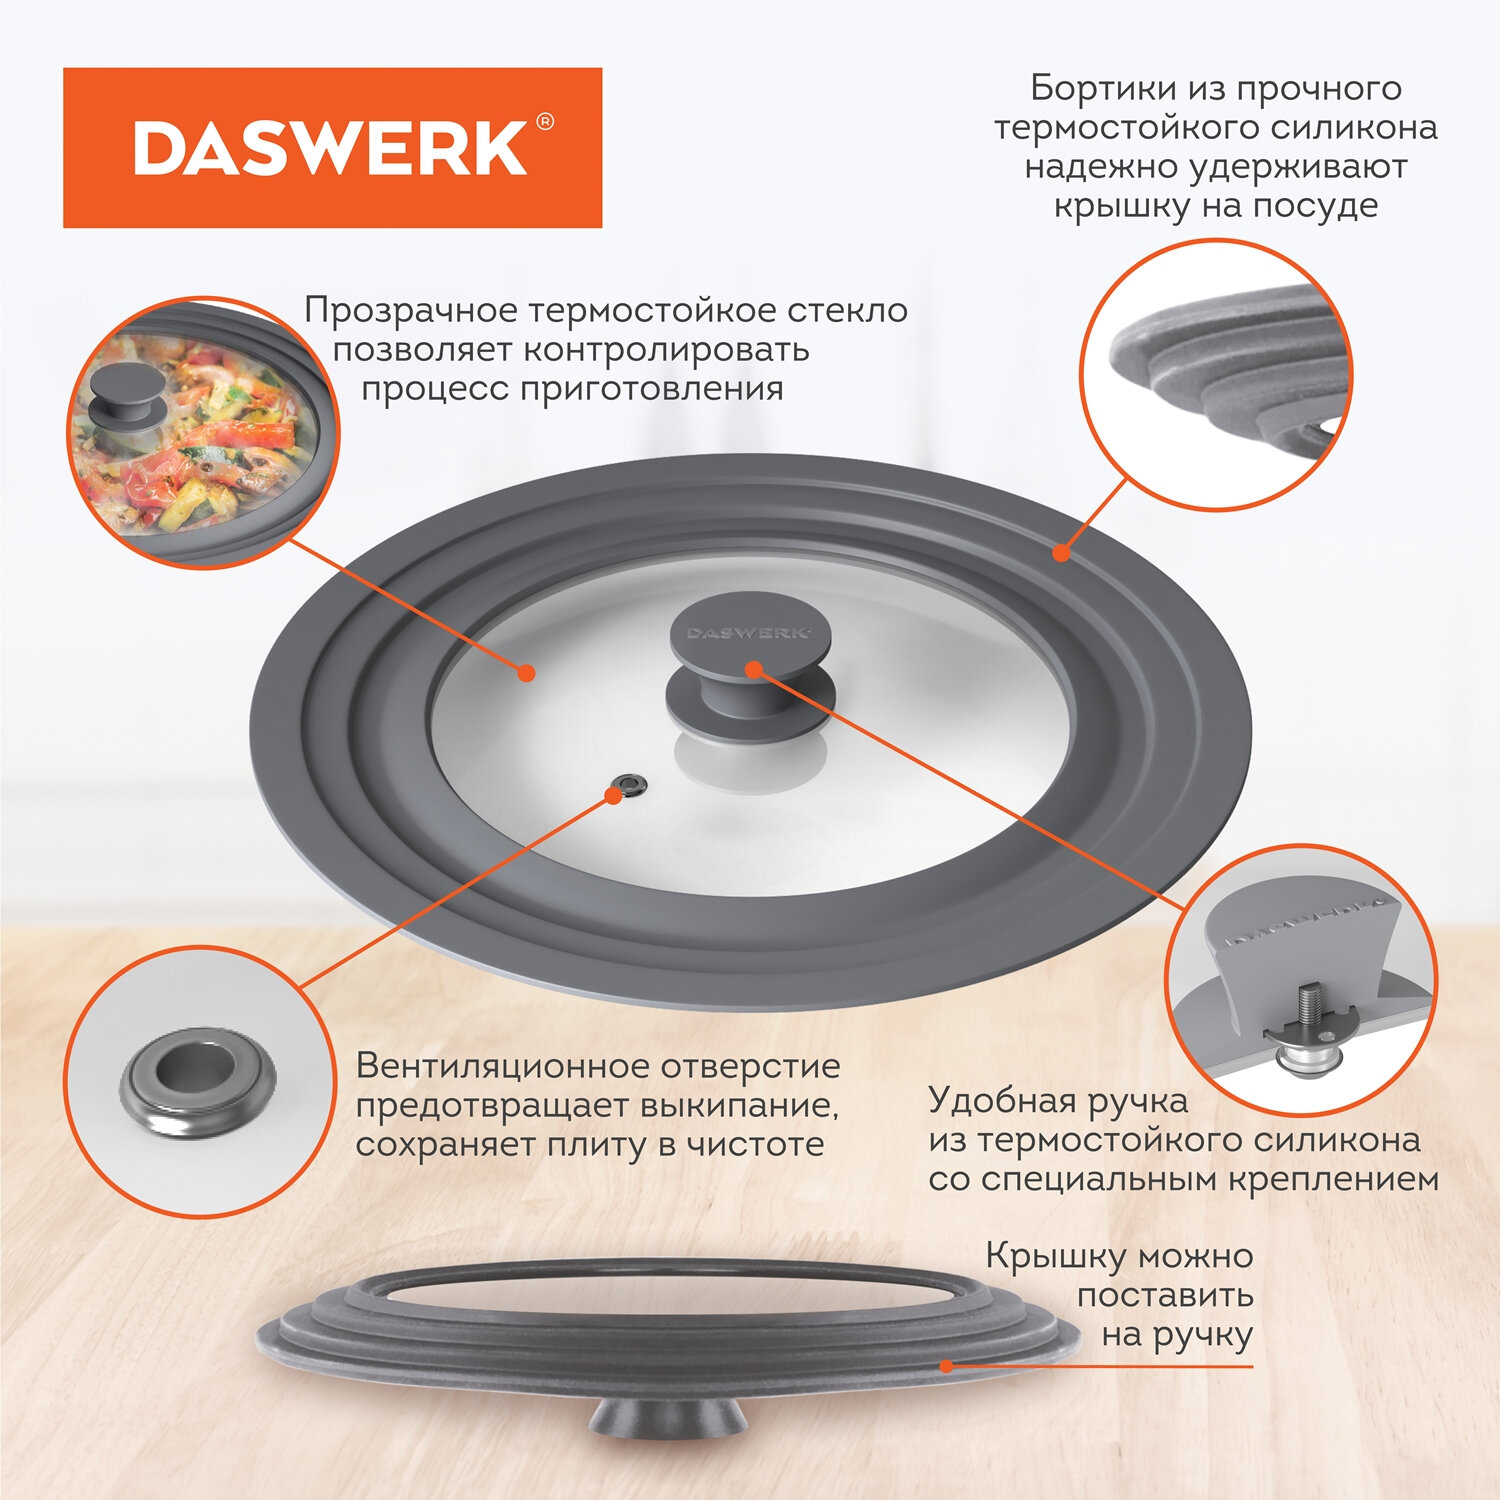 Крышка для сковороды DASWERK кастрюли посуды универсальная 3 размера 16-18-20см - фото 4